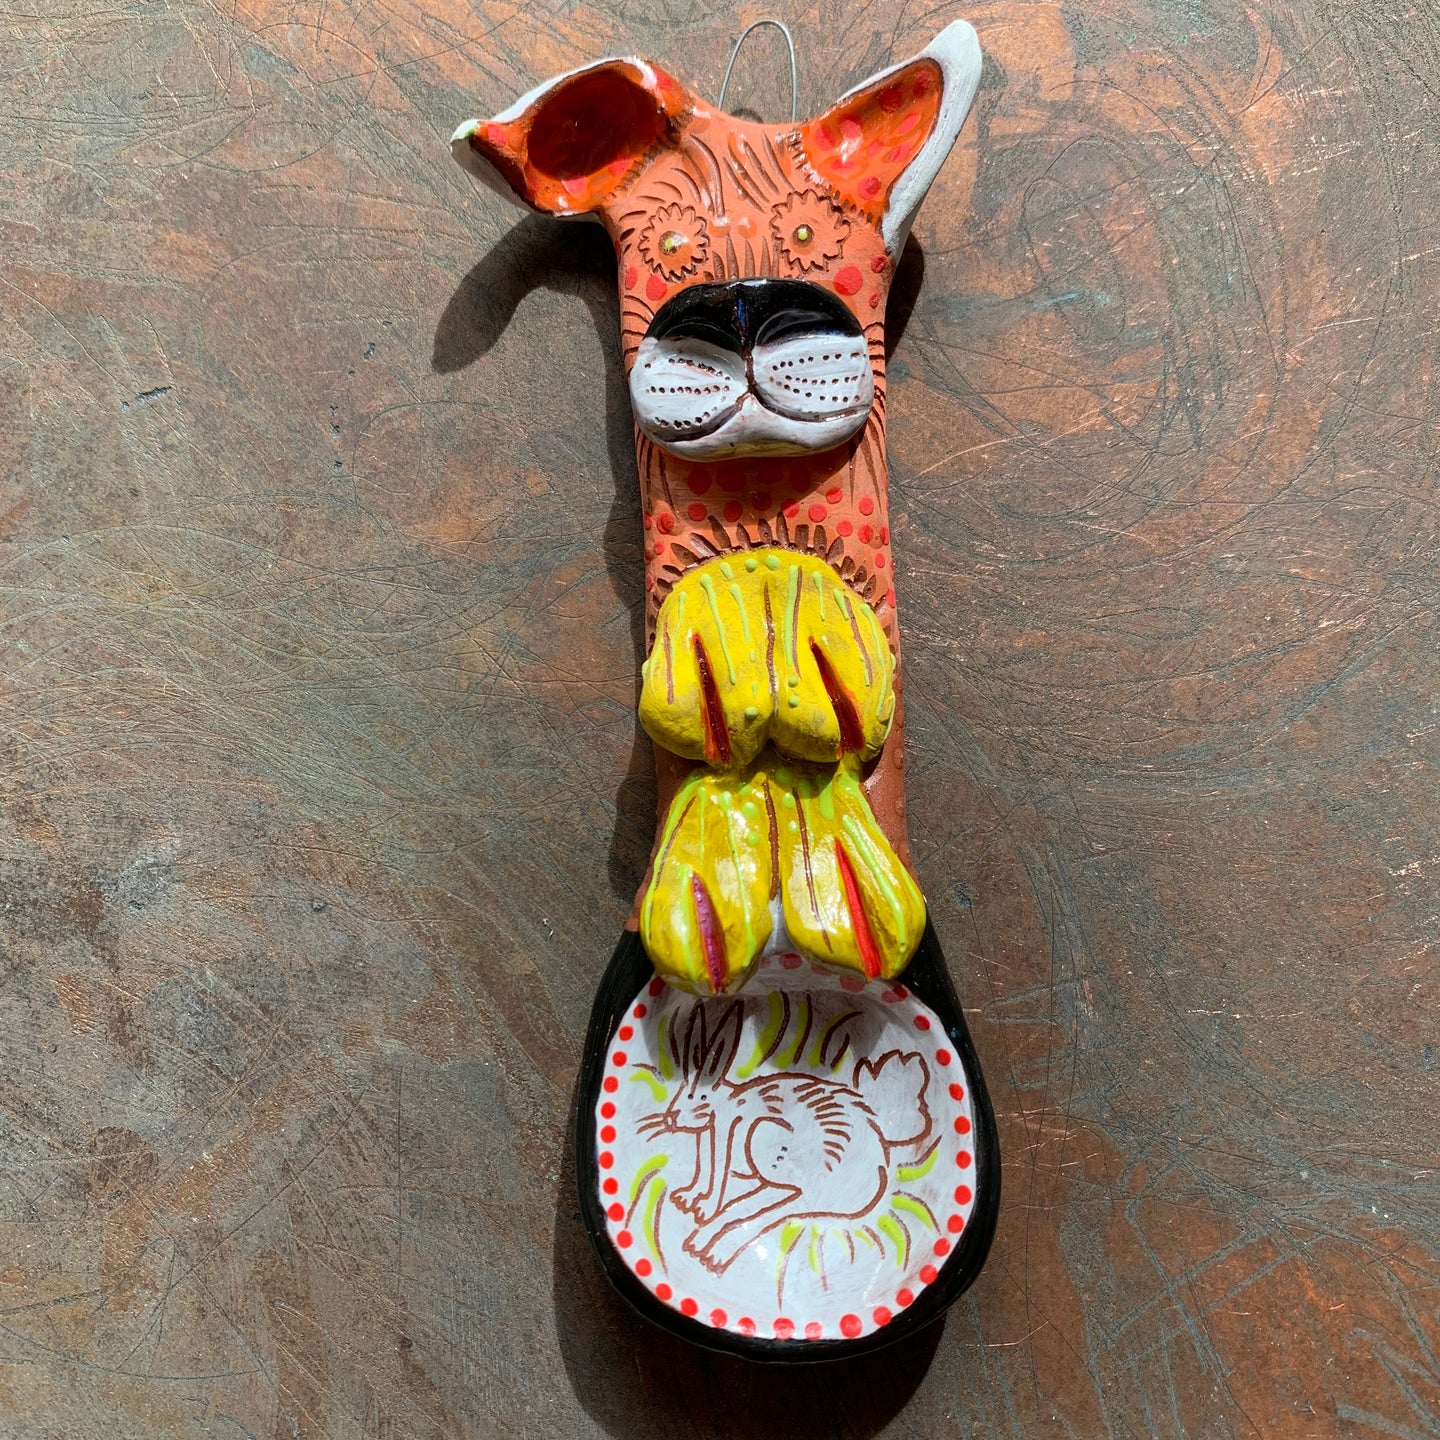 Doggie ceramic spoon